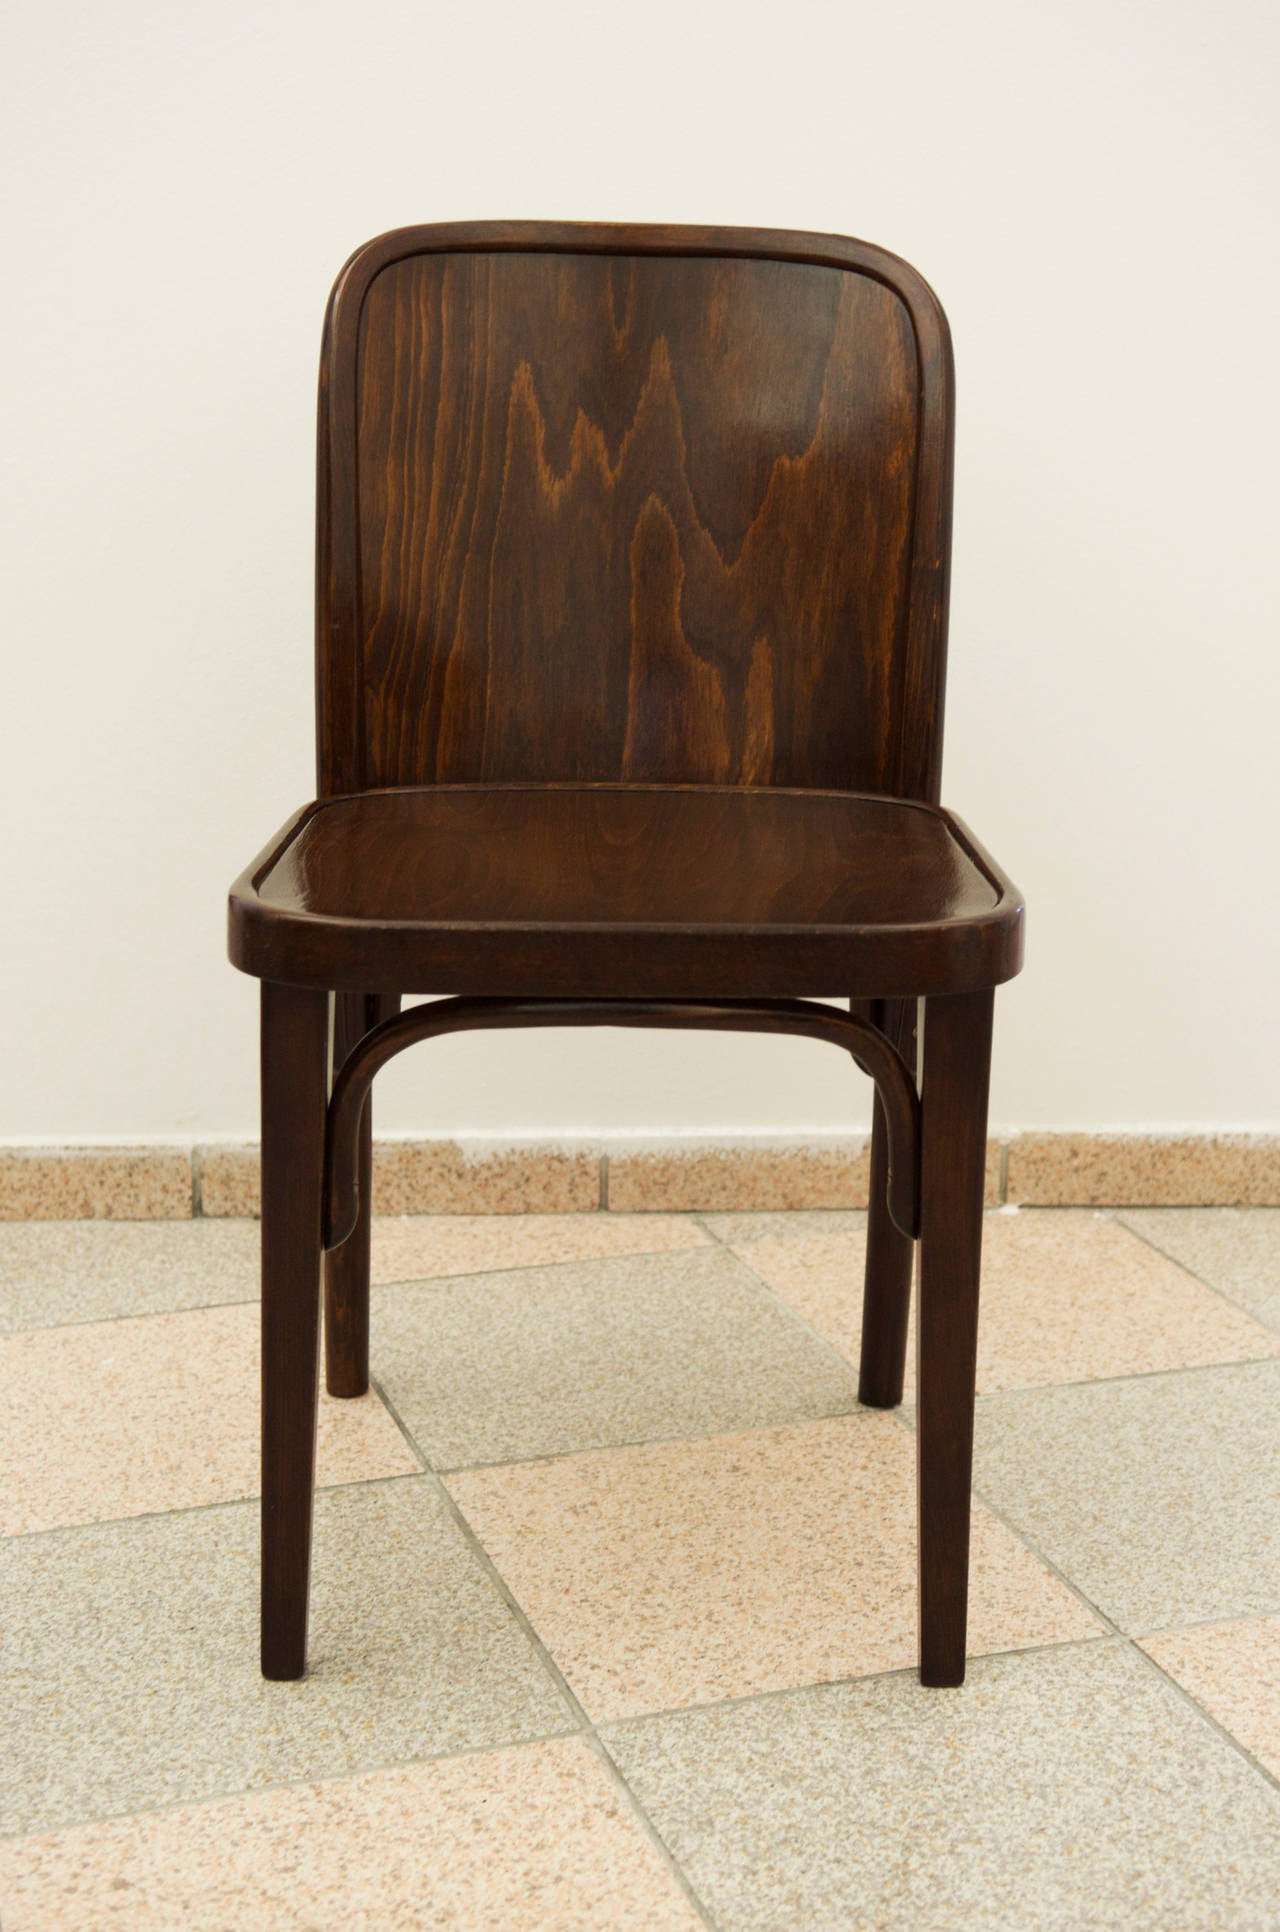 Ein Paar Thonet-Stühle Nr. 811, Josef Hoffmann zugeschrieben
vollständig restauriert, dunkel gebeizt, Schellackpolitur.